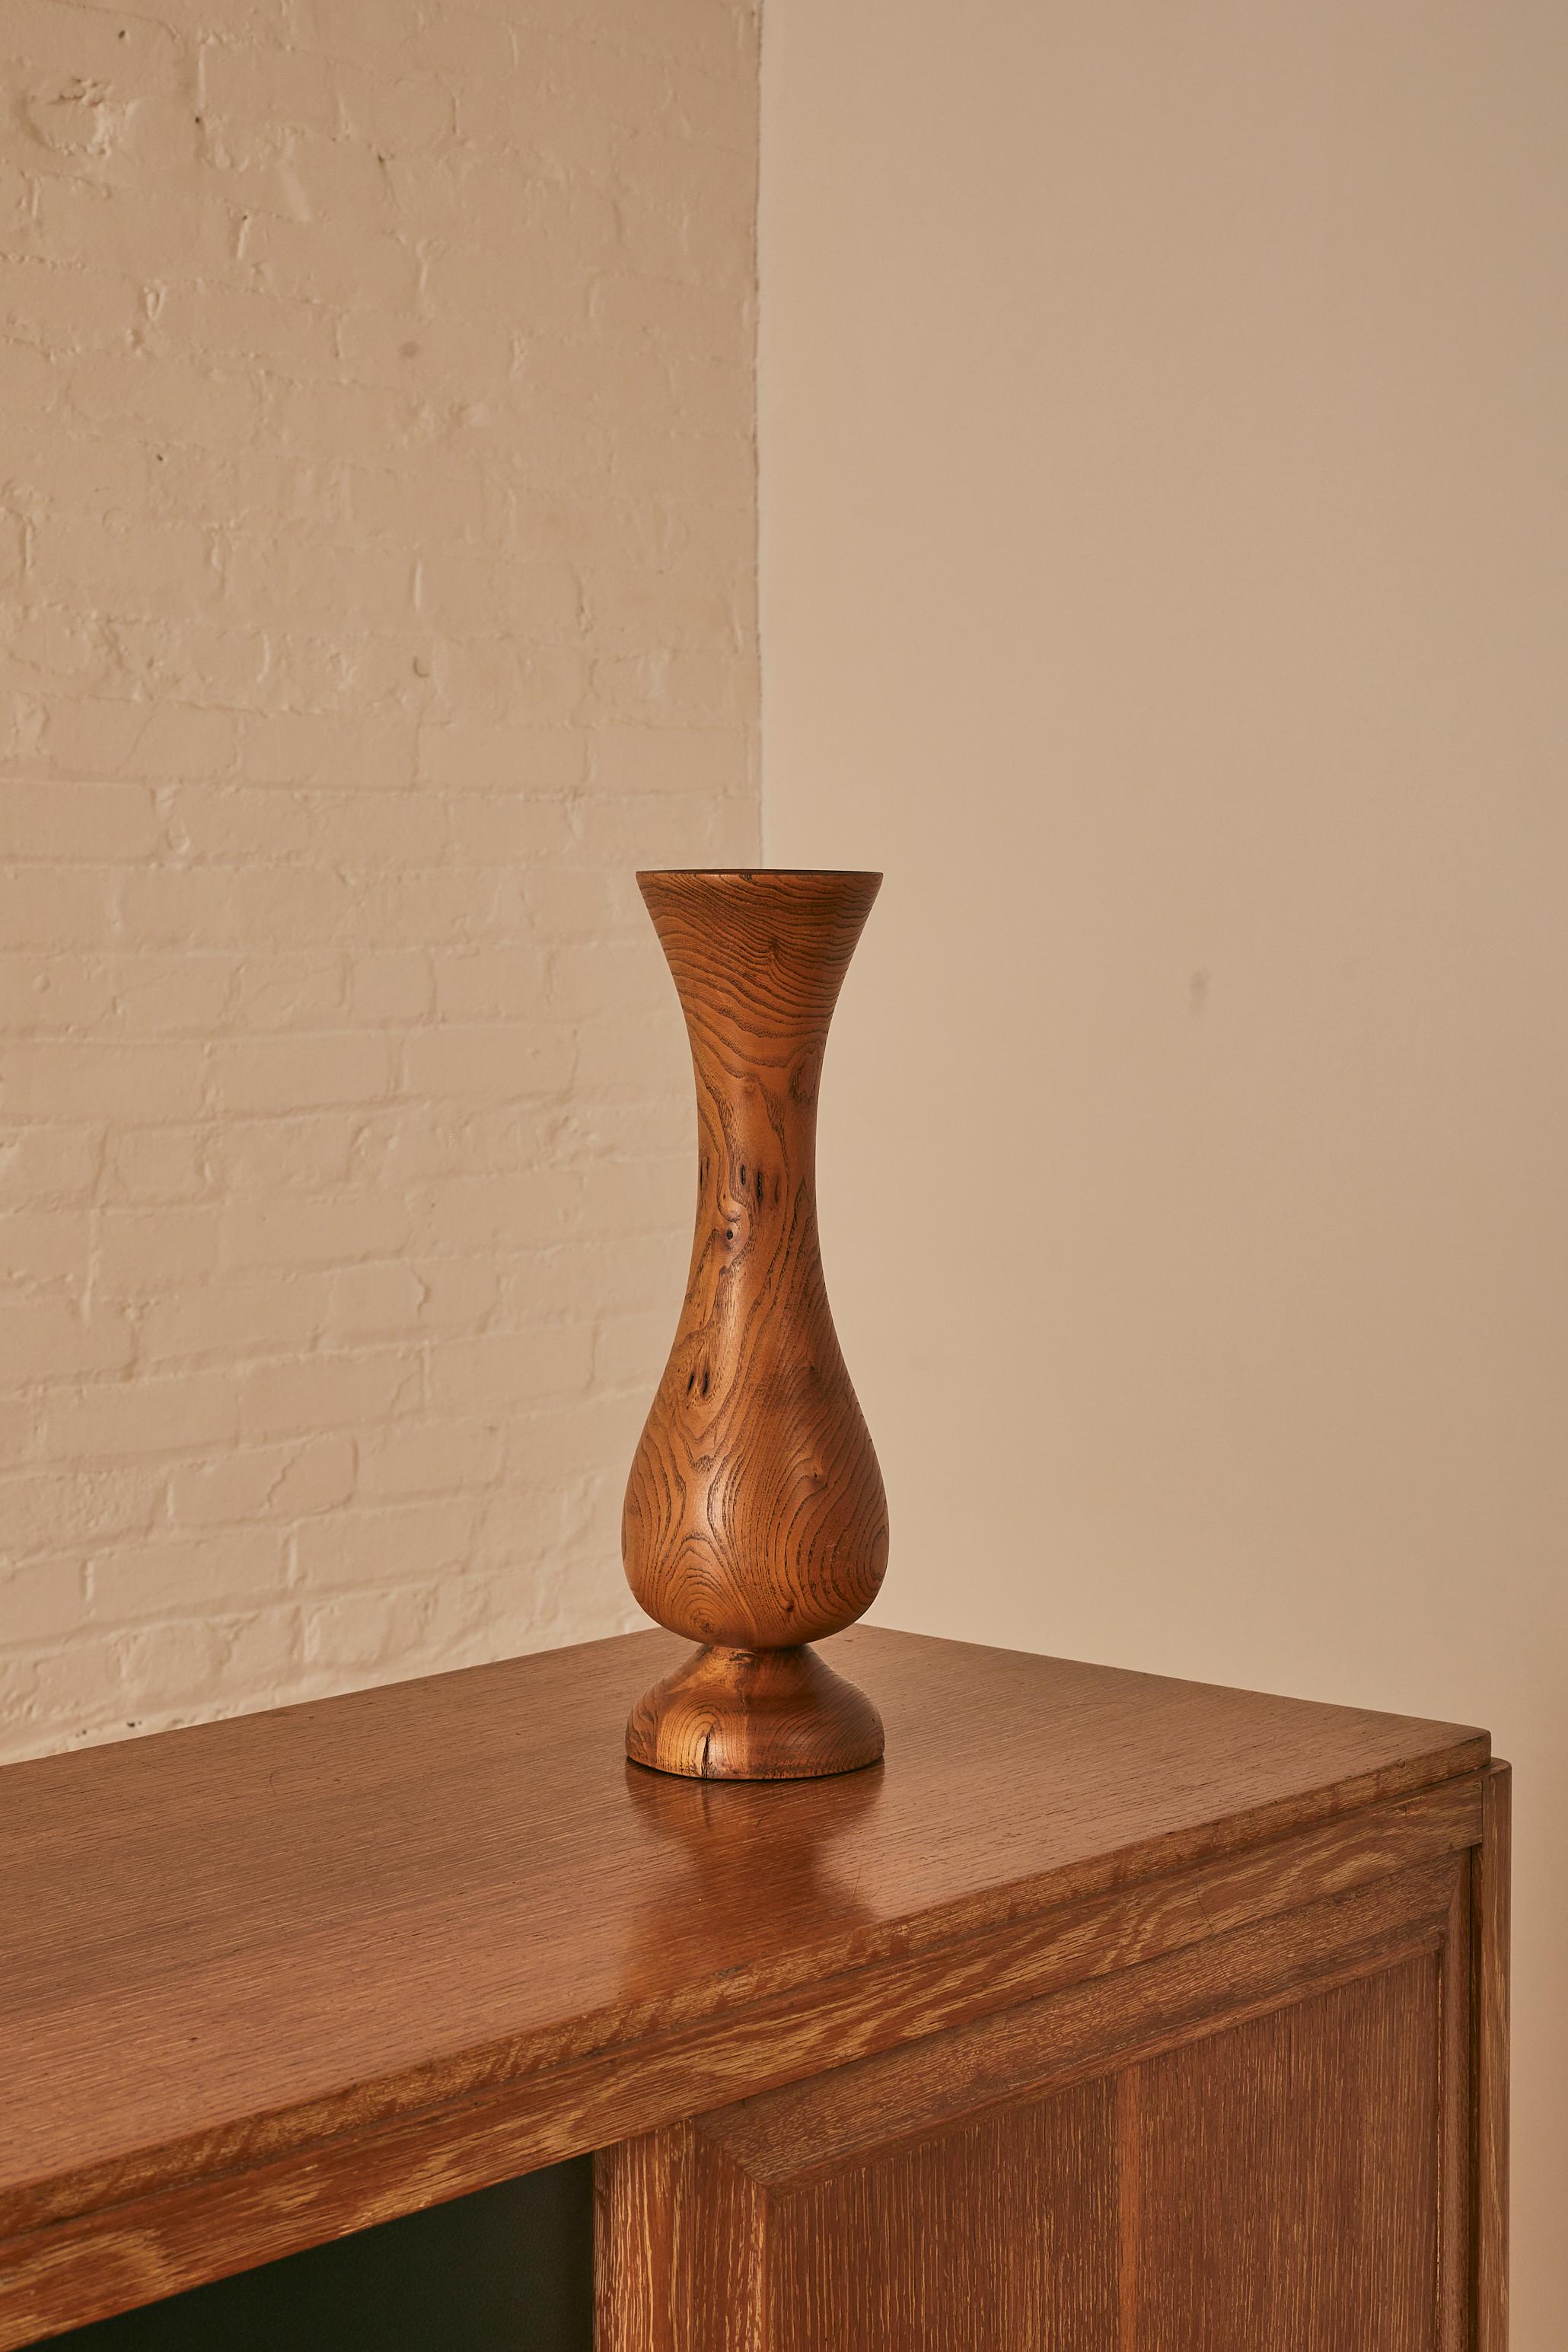 Vintage Vallauris Wooden Vase.

